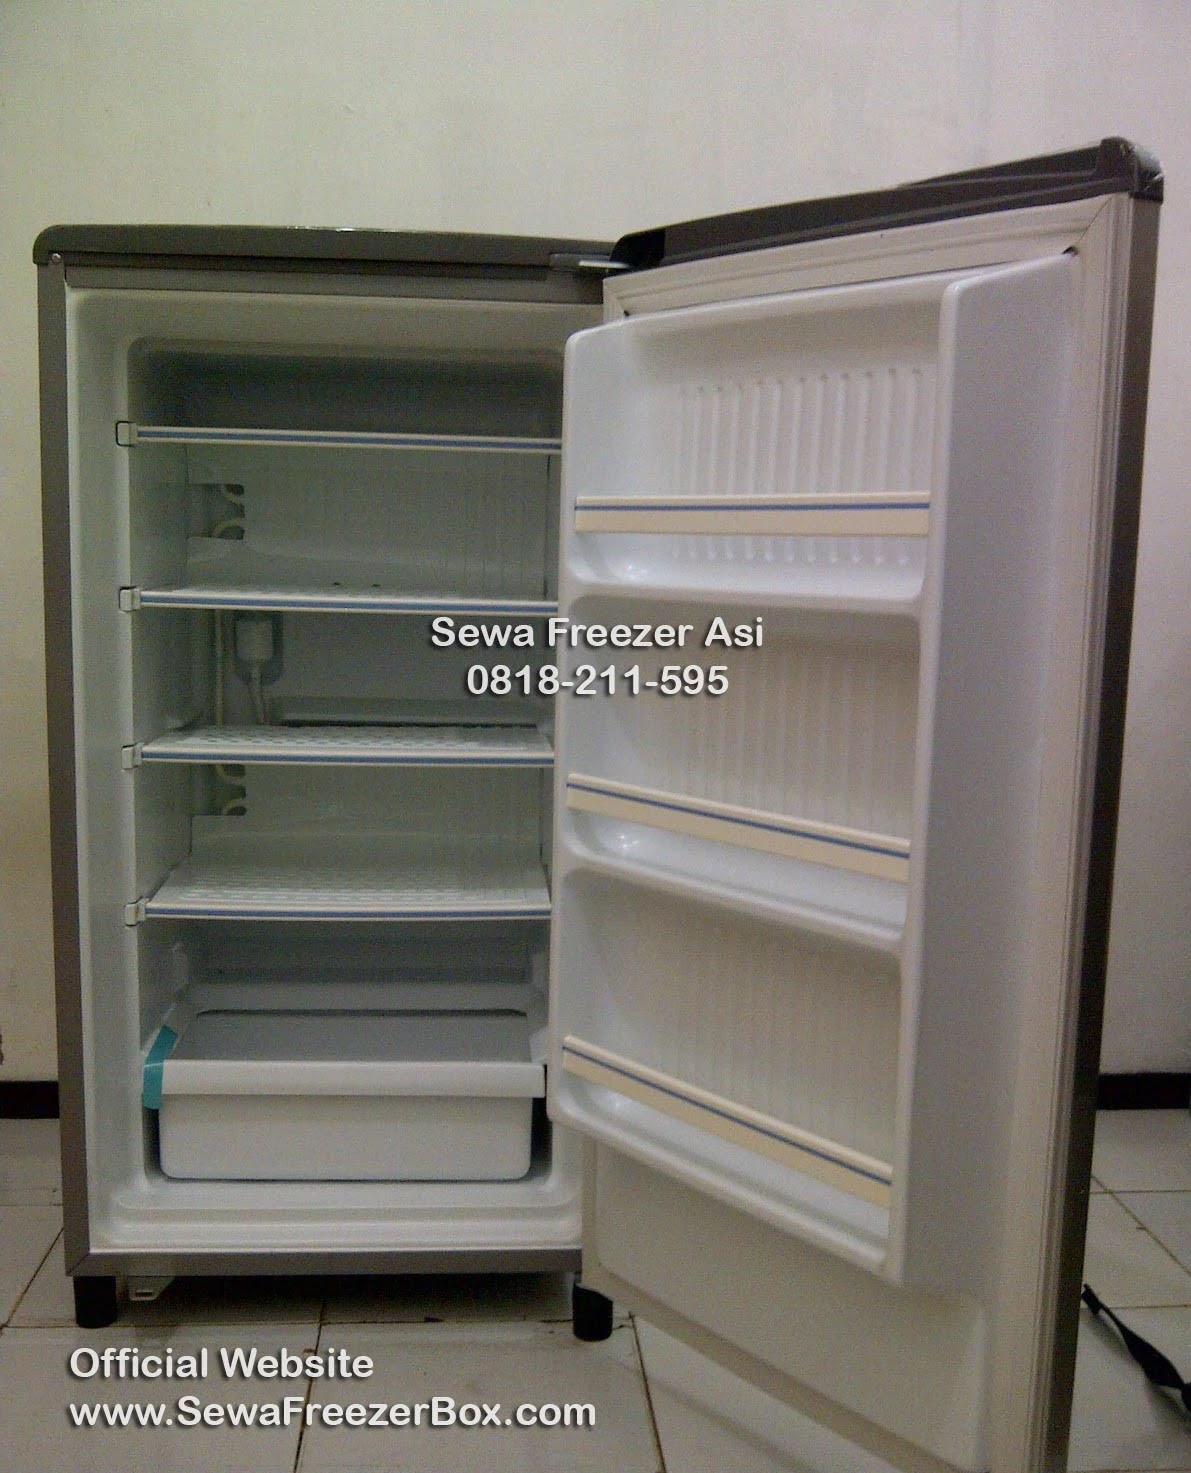 sewa freezer asi 4 rak Balong Ponorogo